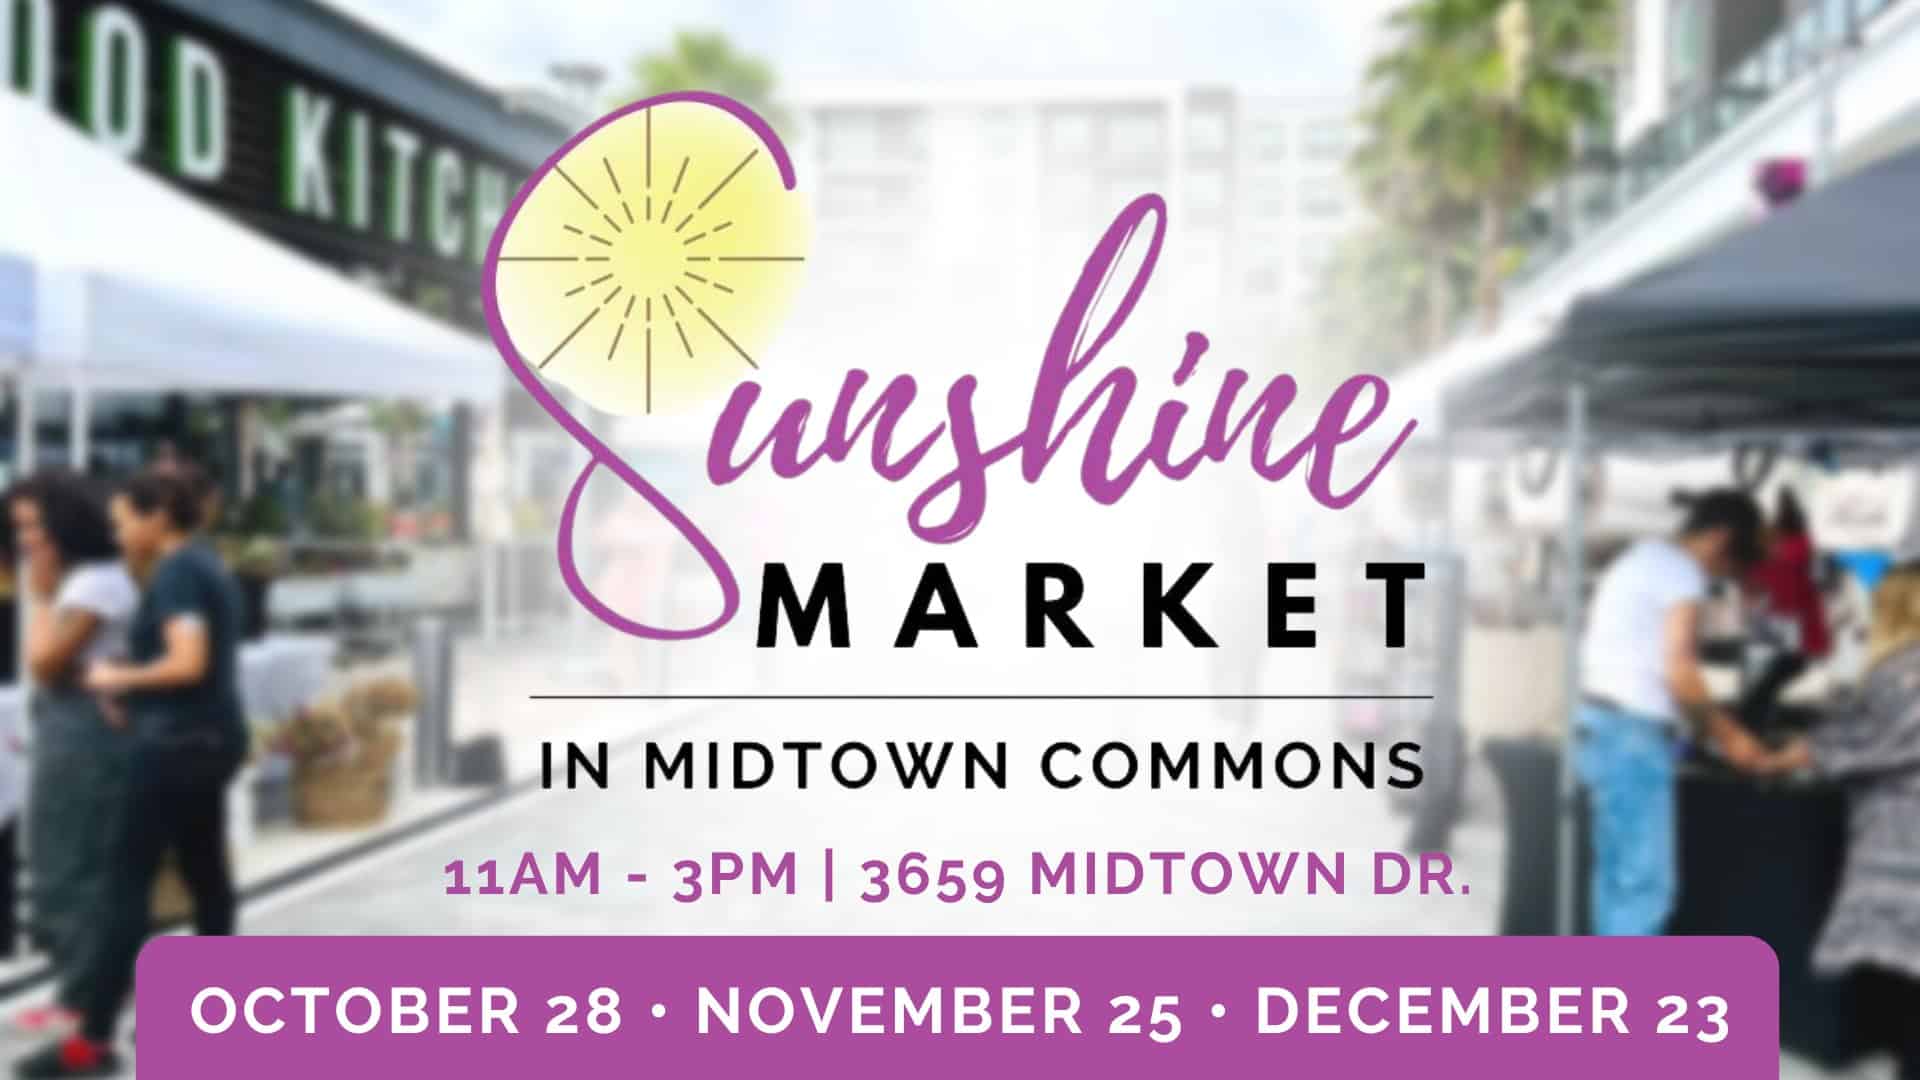 Sunshine Market at Midtown Tampa